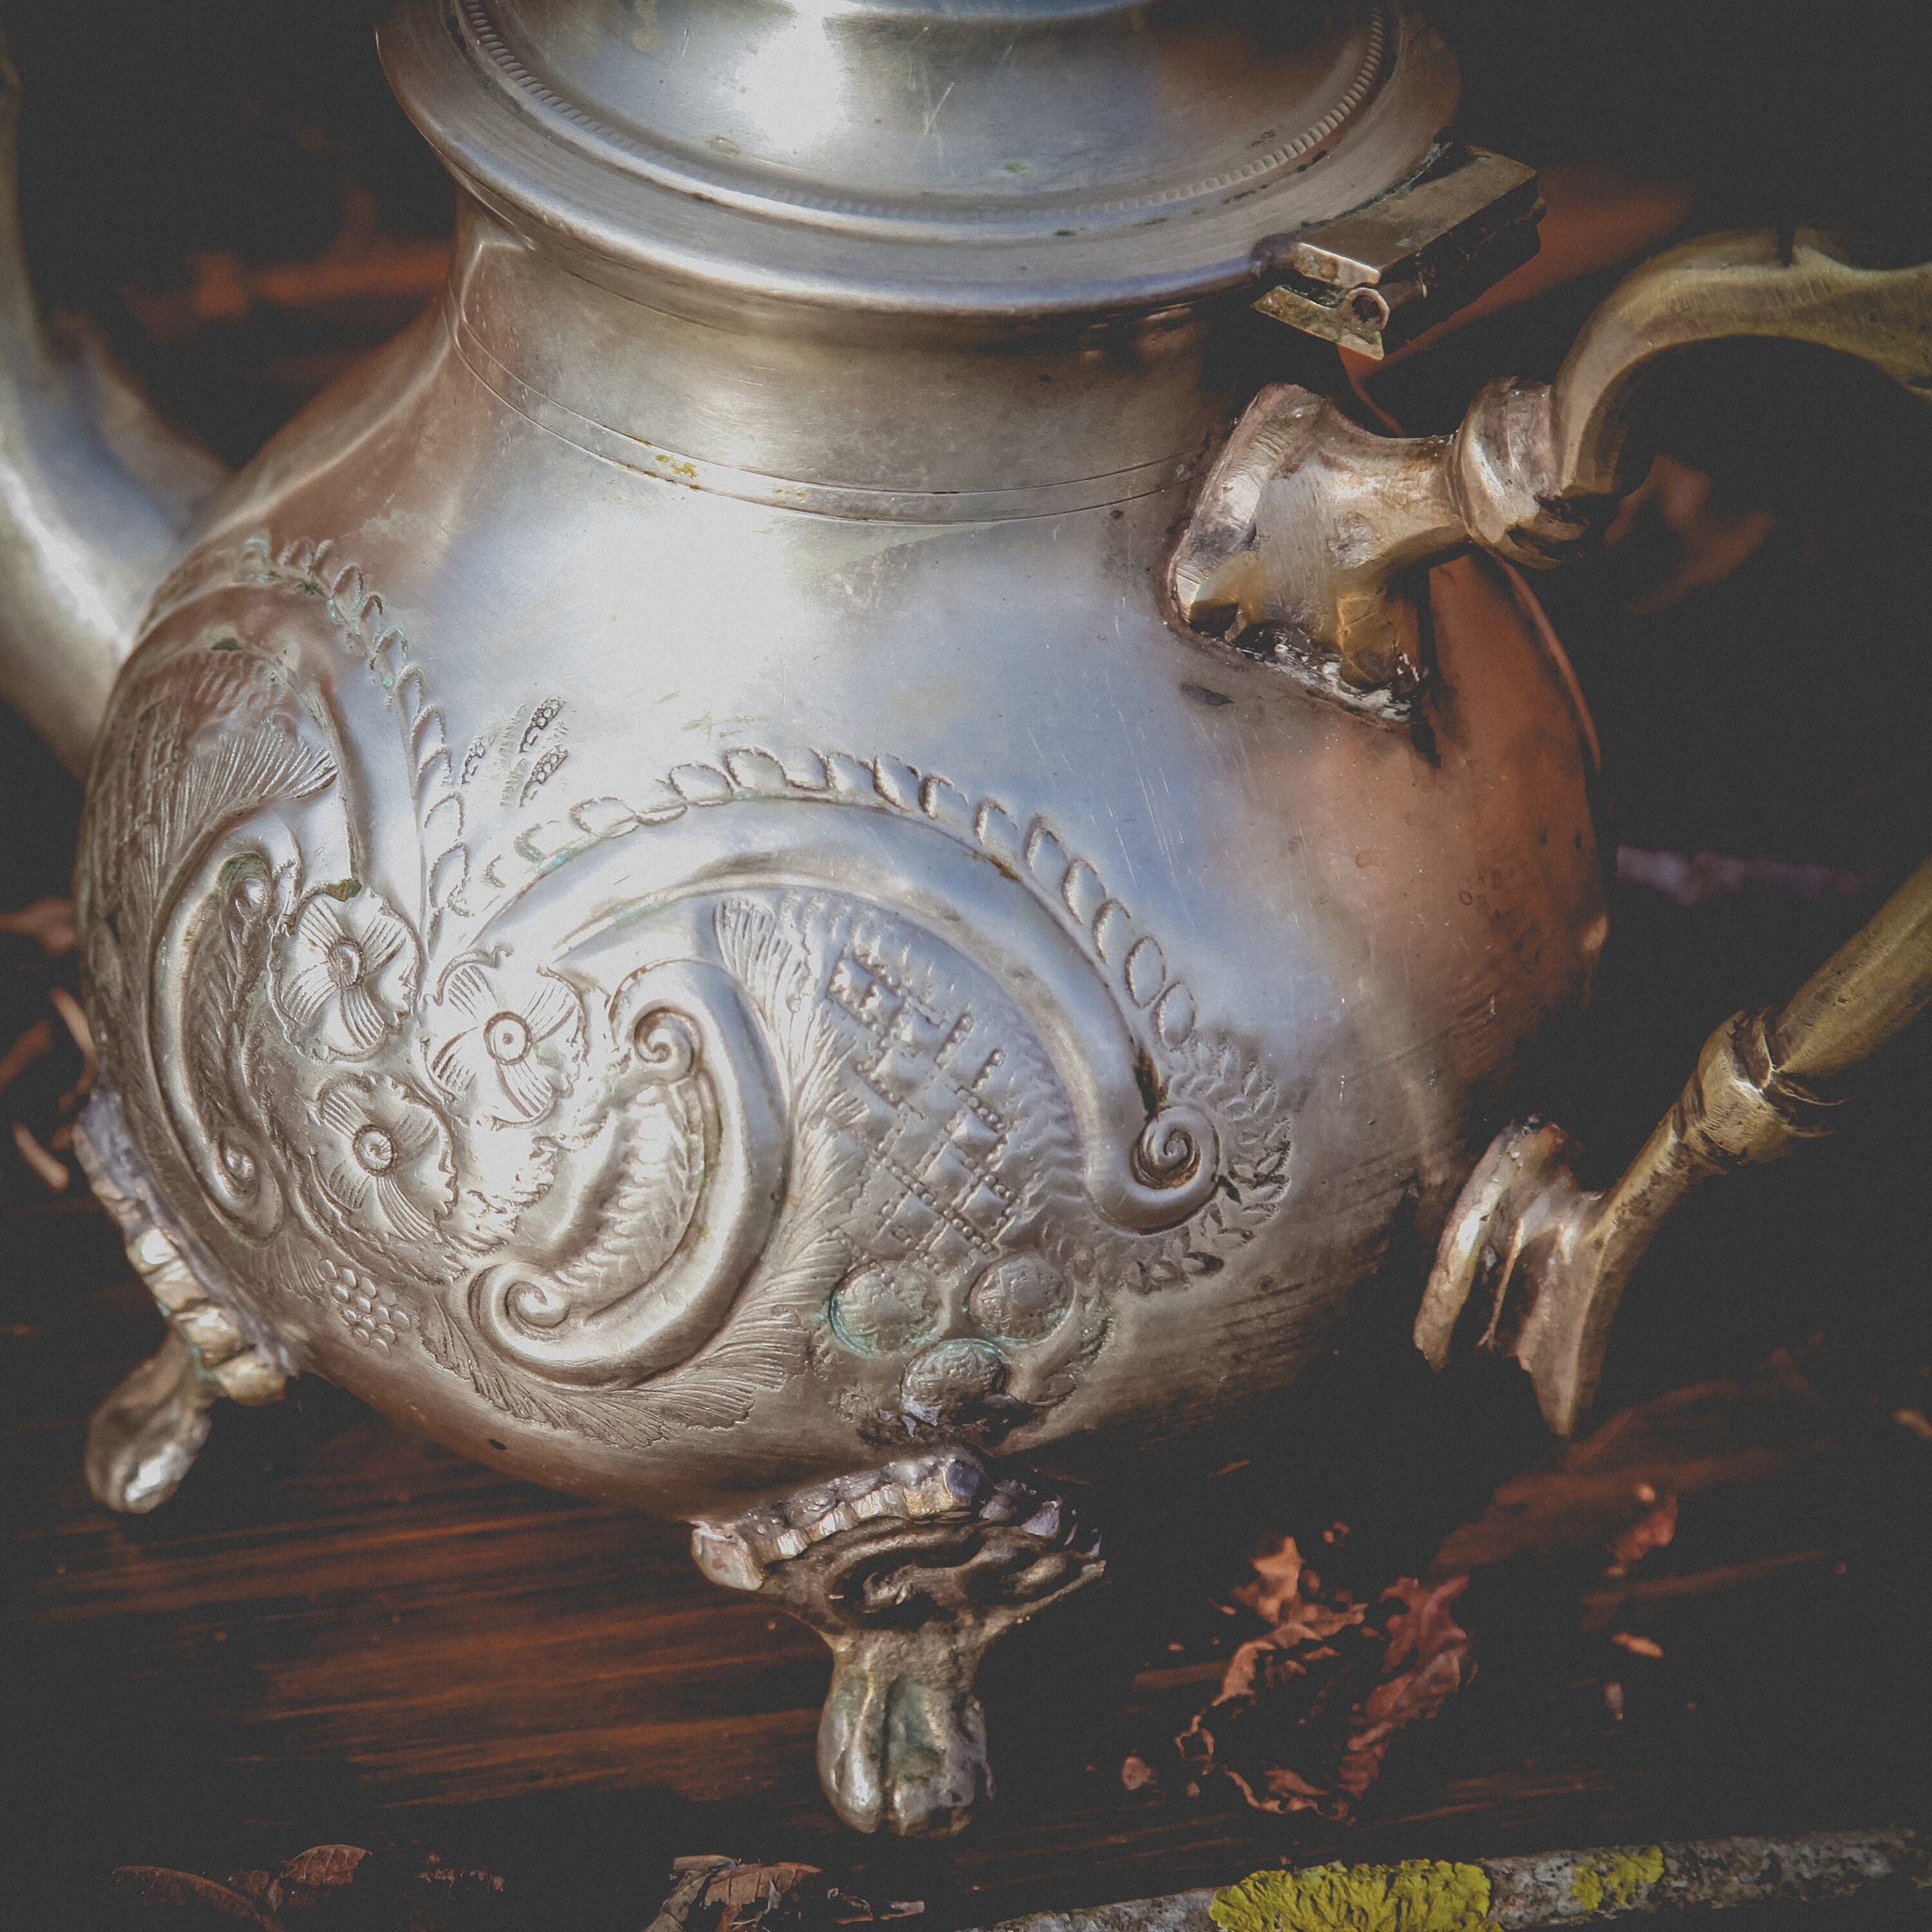 Théière marocaine en laiton argenté 550 ml avec passoire, poignées creuses  et couvercle à charnière – Théière élégante pour déguster le thé –